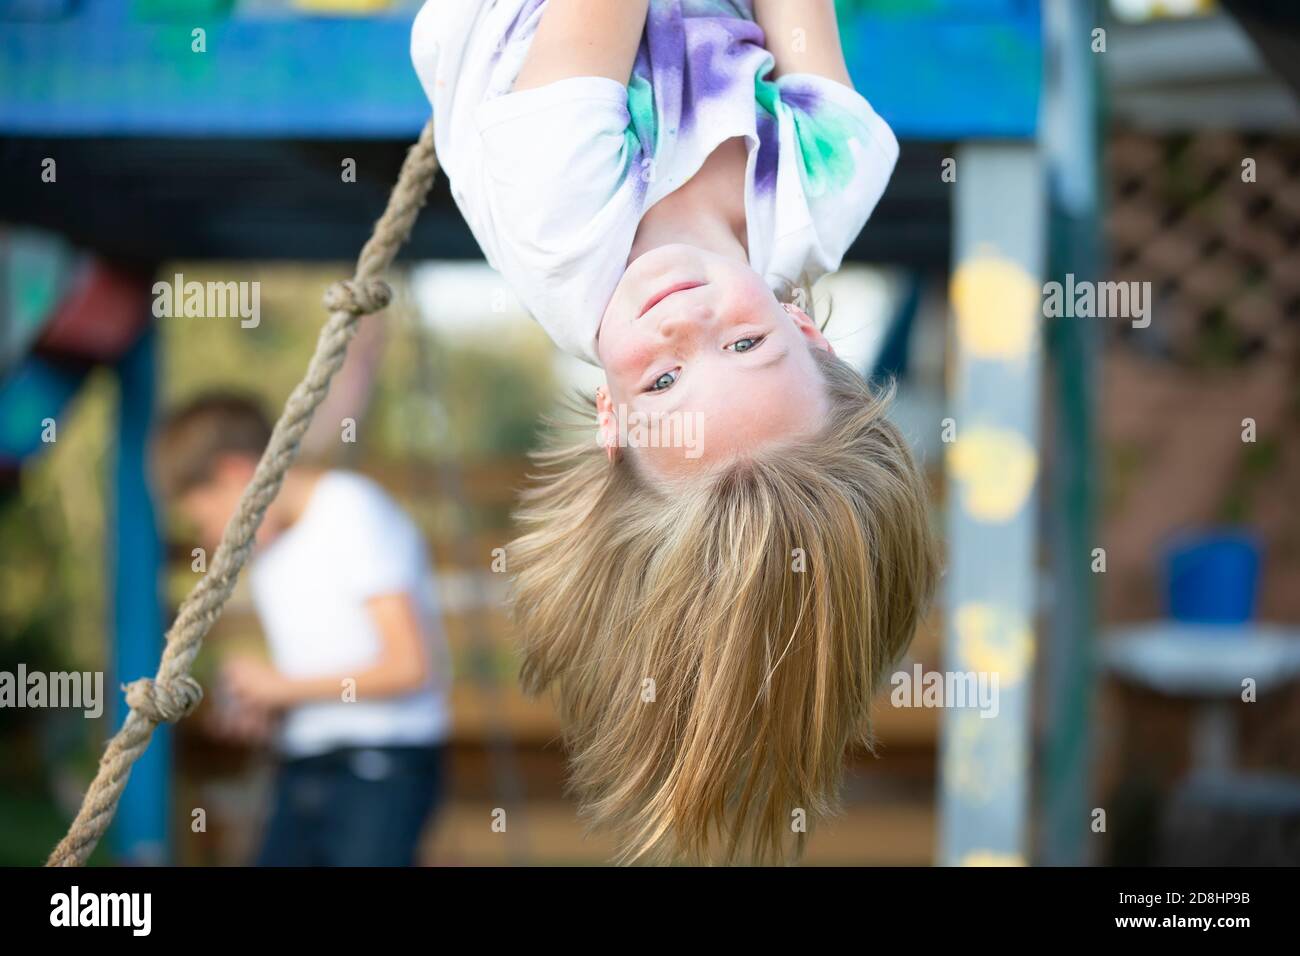 Schönes kleines Mädchen hängt kopfüber auf dem Spielplatz. Kleines Mädchen lächelt in die Kamera. Stockfoto